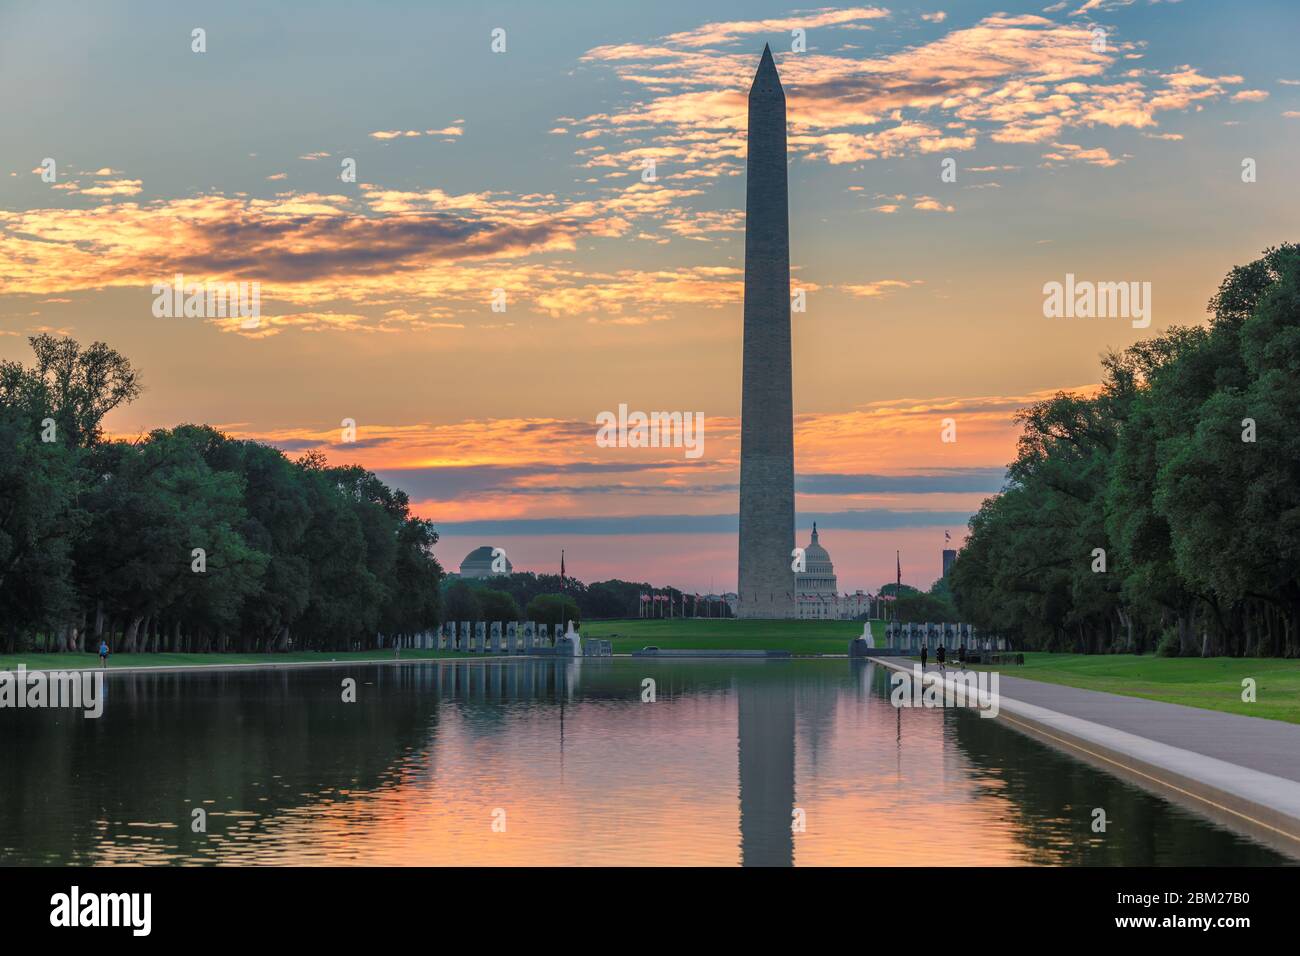 Washington Monument at Sunrise, Washington DC, USA. Stock Photo